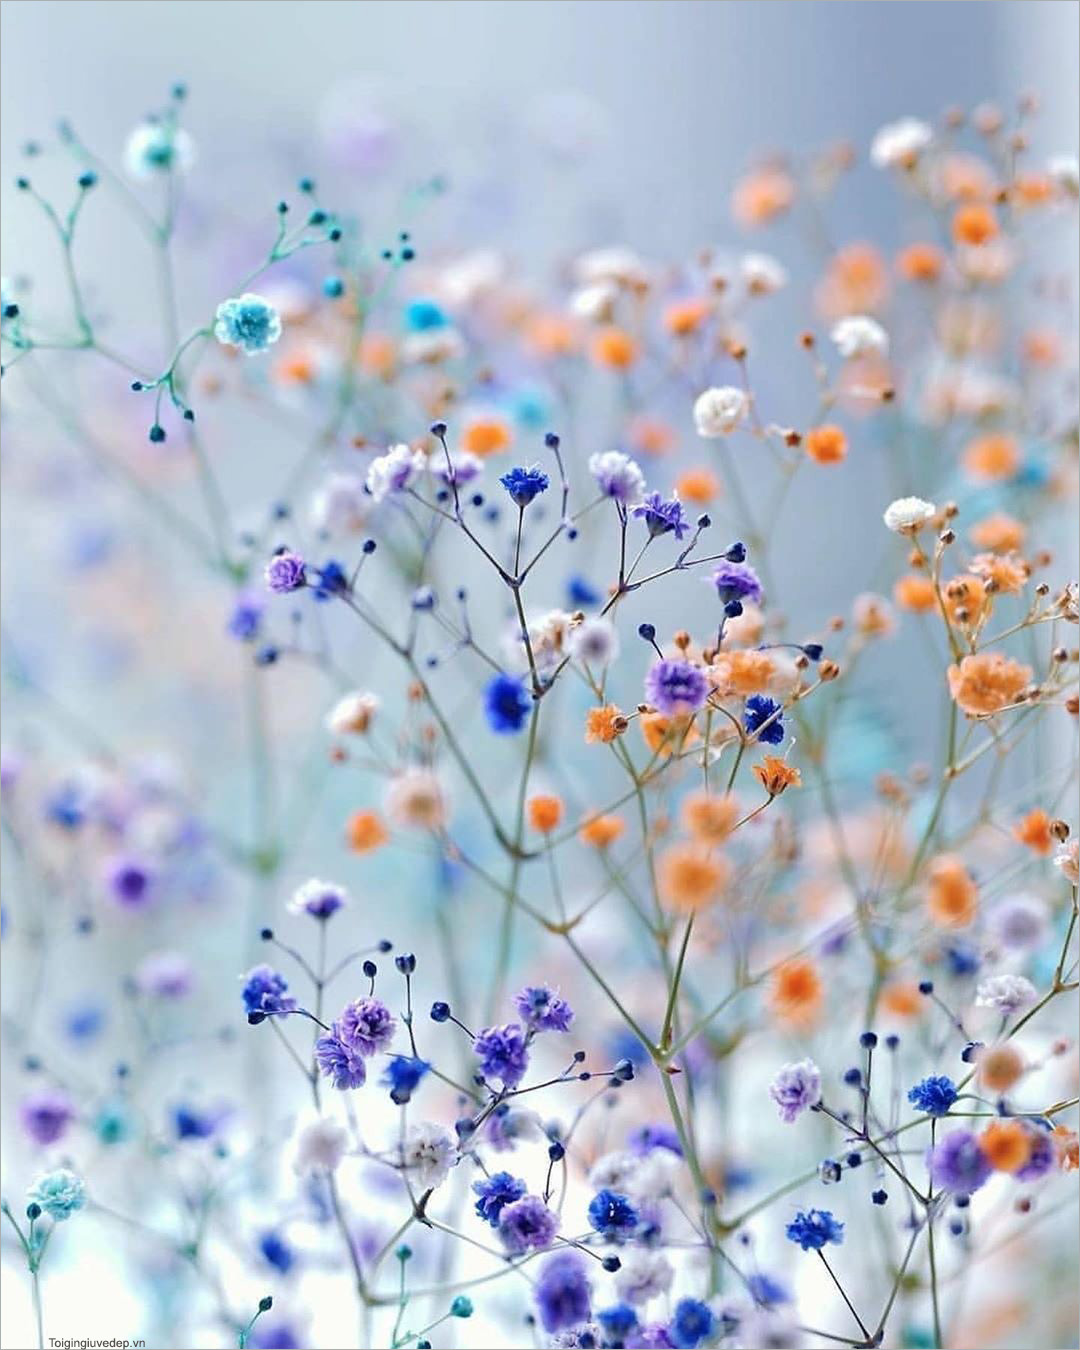 Avatar chill hoa nhẹ nhàng: Hình đại diện hoa nhẹ nhàng và chill sẽ là sự lựa chọn hoàn hảo cho những người yêu thích sự thuần khiết và bình yên. Hãy tận dụng các nguồn tài nguyên hình ảnh hoa tuyệt đẹp để thể hiện sự độc đáo và tinh tế của bản thân.